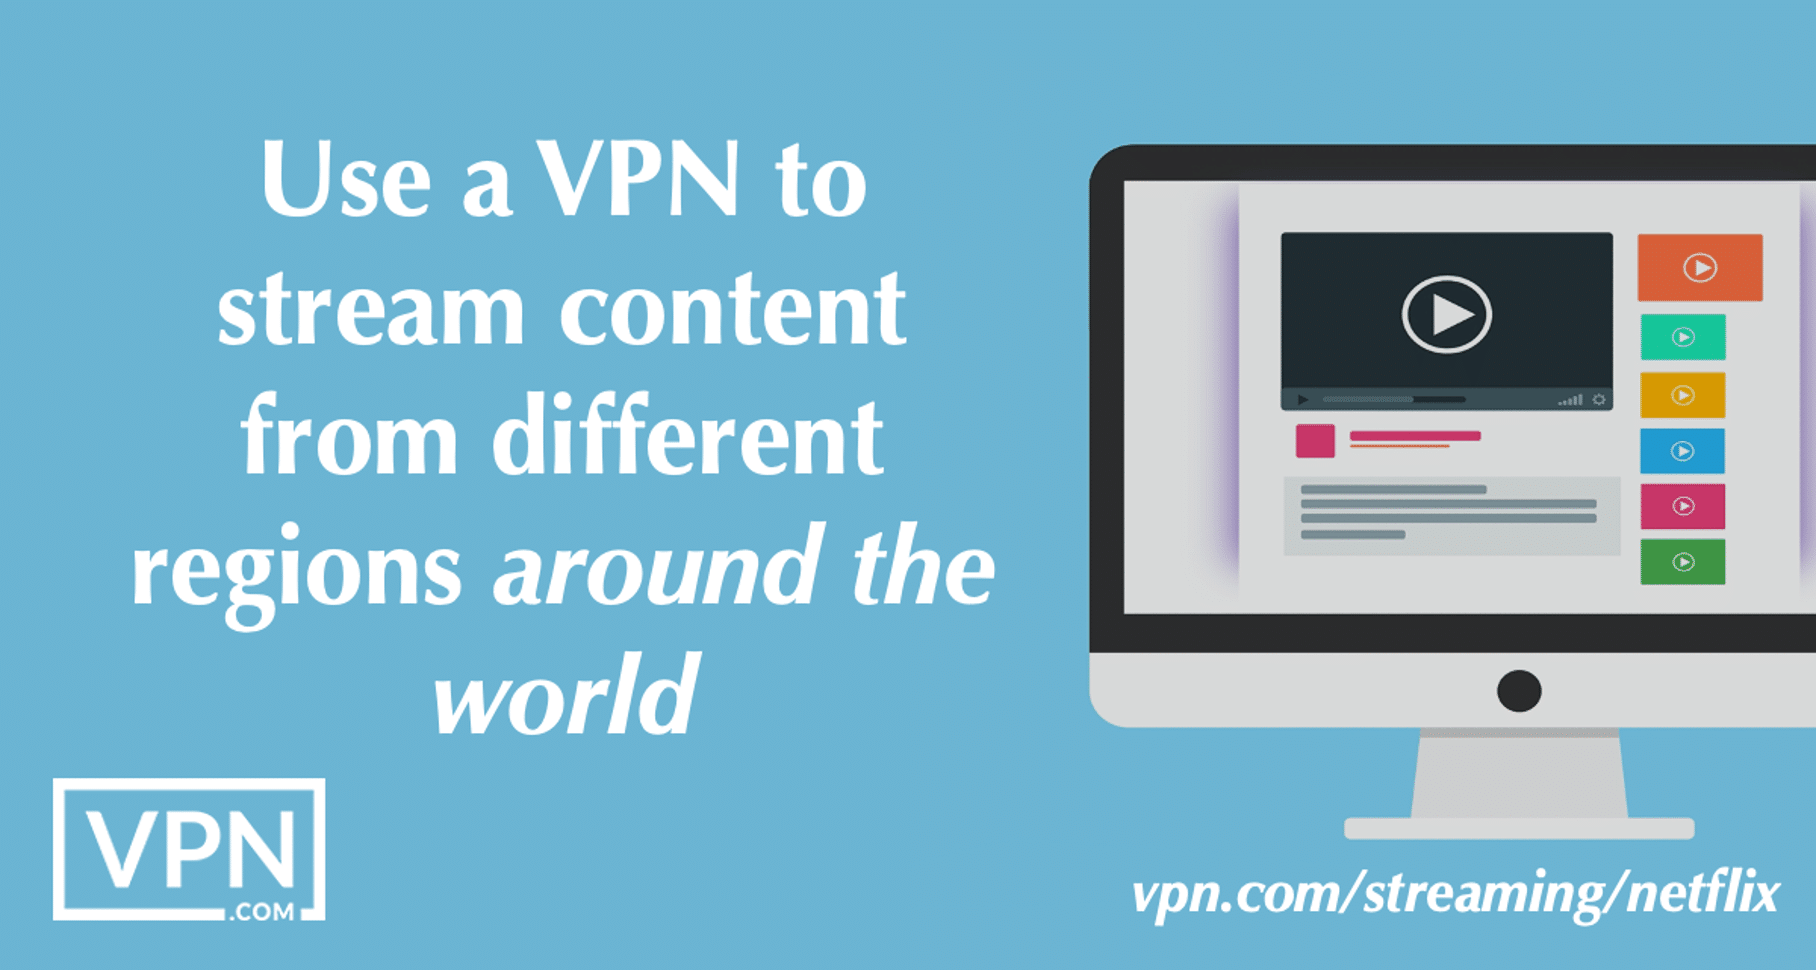 Használjon VPN-t a világ különböző régióiból származó tartalmak streameléséhez.